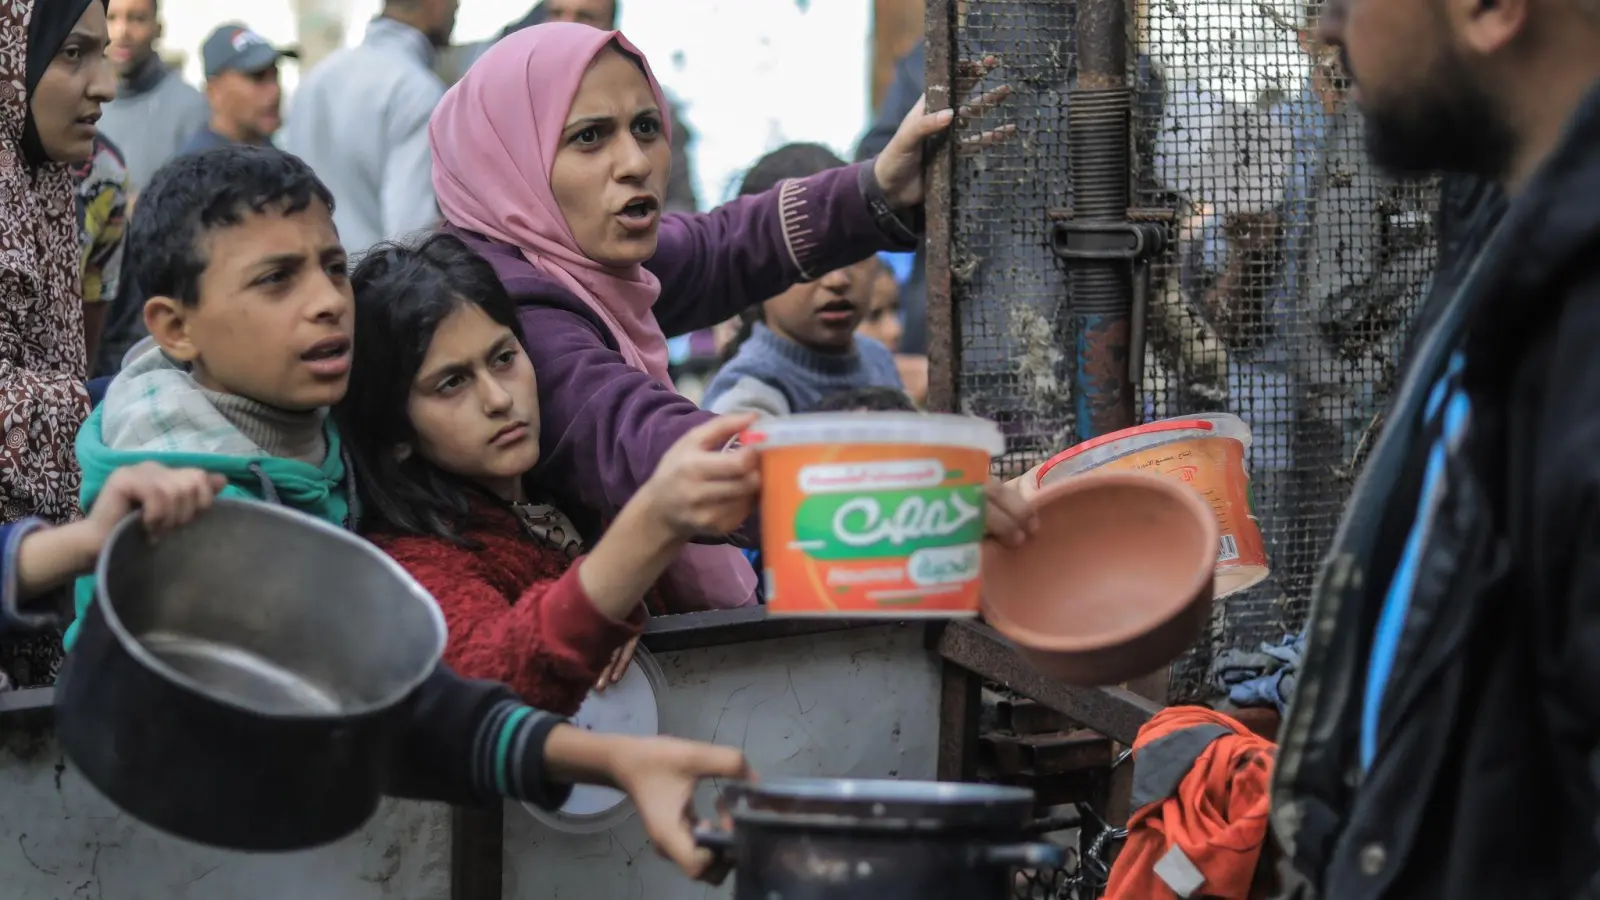 Menschen bitten an einer Essensausgabe in Rafah um Lebensmittel. (Foto: Mohammed Talatene/dpa)